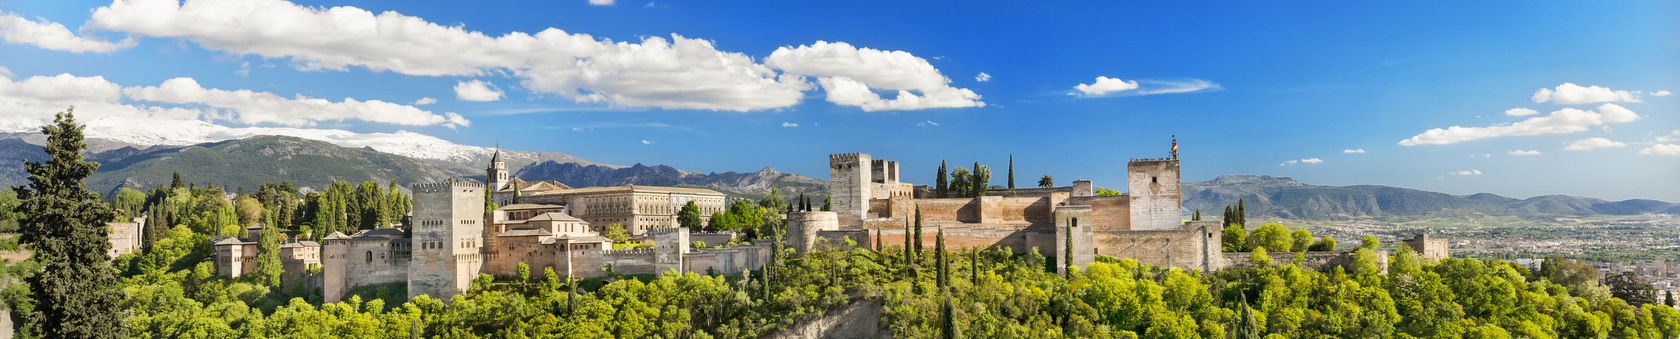 Granada - idealne miasto do nauki języka hiszpańskiego